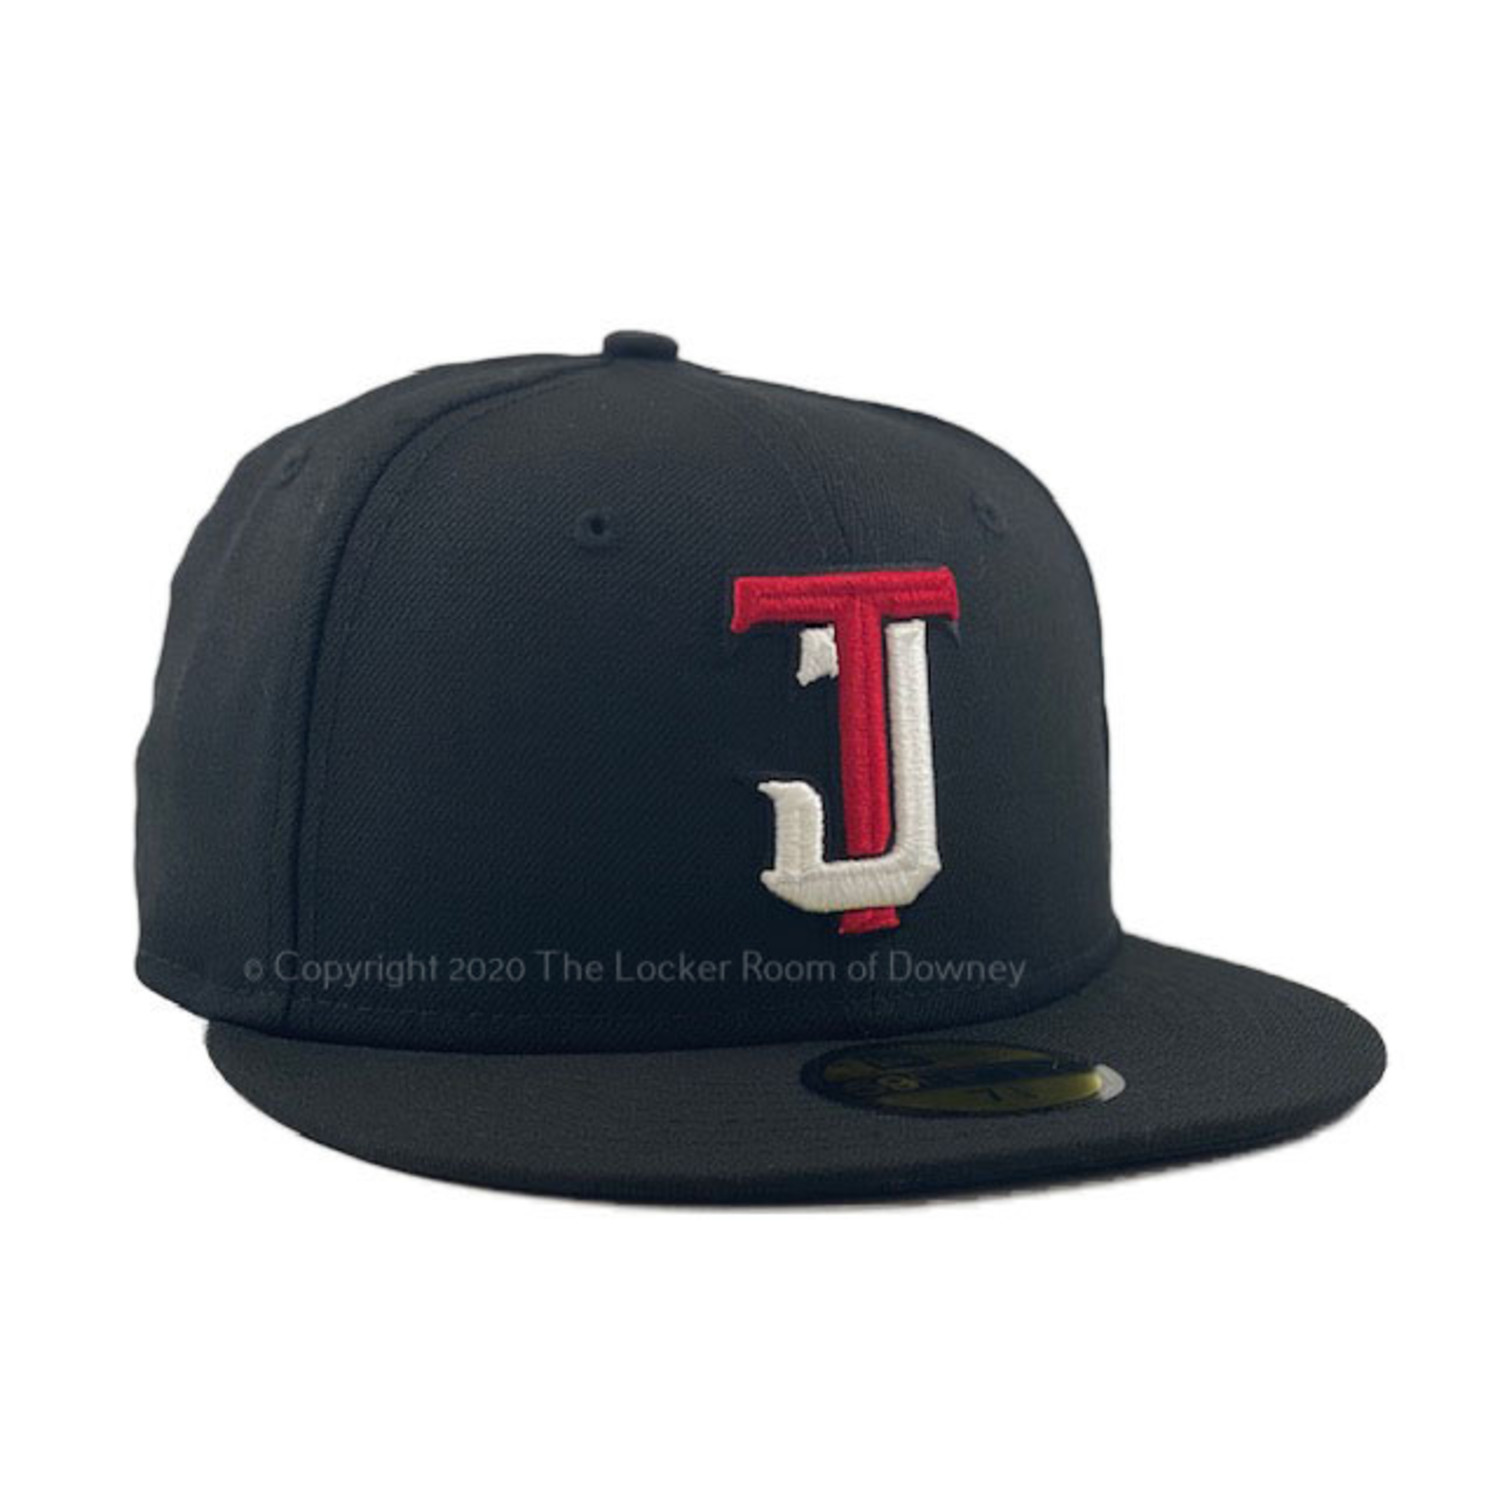 New Era Authentic Toros de Tijuana TJ Black LMB Mexico Baseball Cap Adjustable Hat 9Fifty Snapback OSFM 